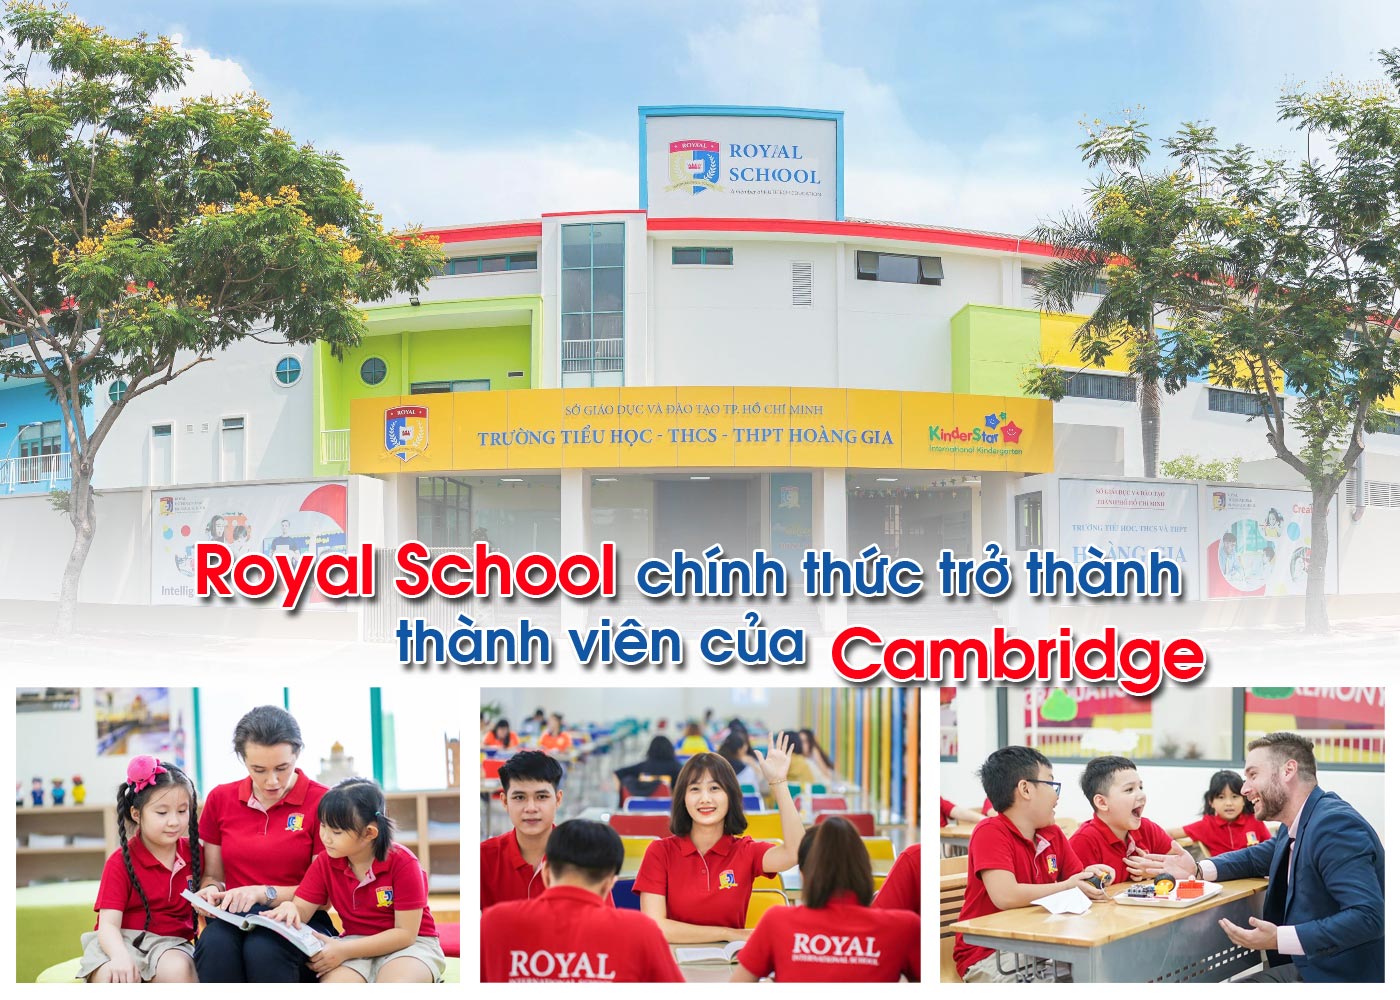 Royal School chính thức trở thành thành viên của Cambridge - Ảnh 1